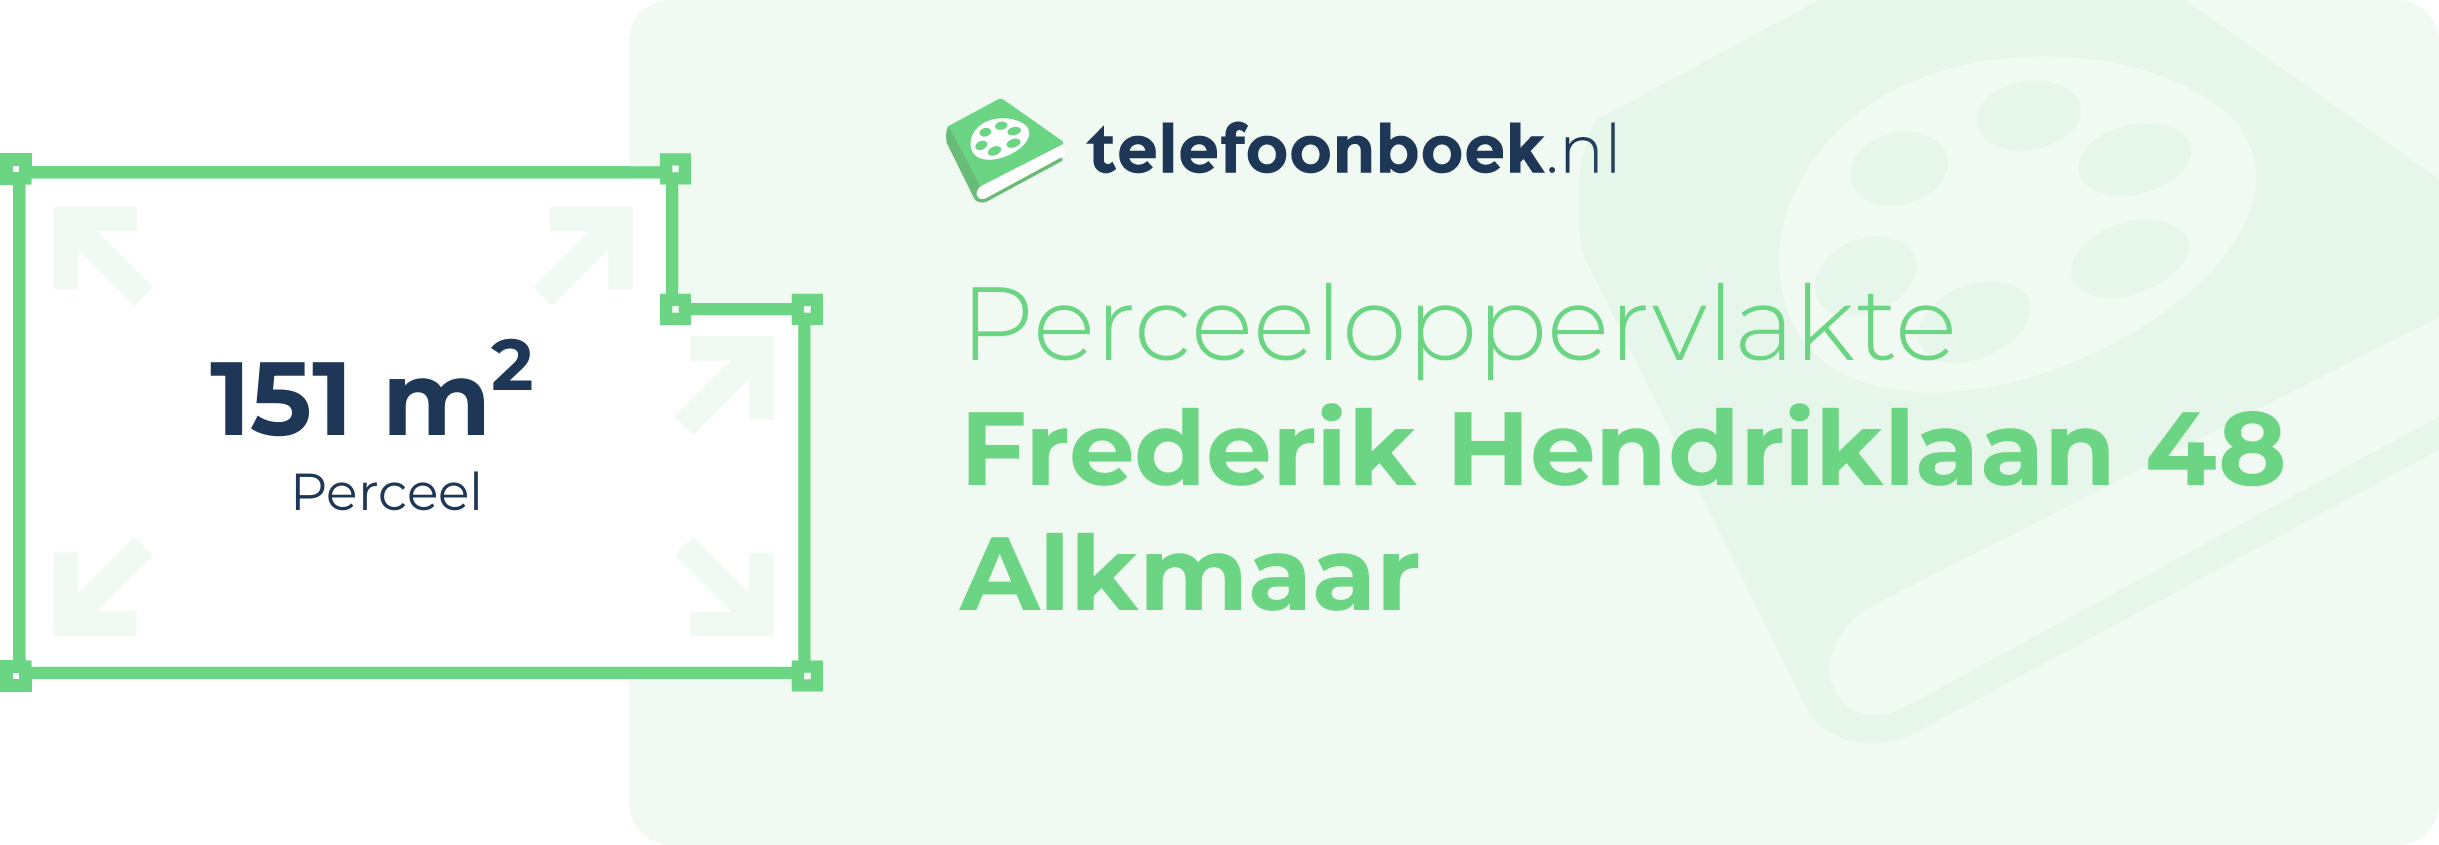 Perceeloppervlakte Frederik Hendriklaan 48 Alkmaar